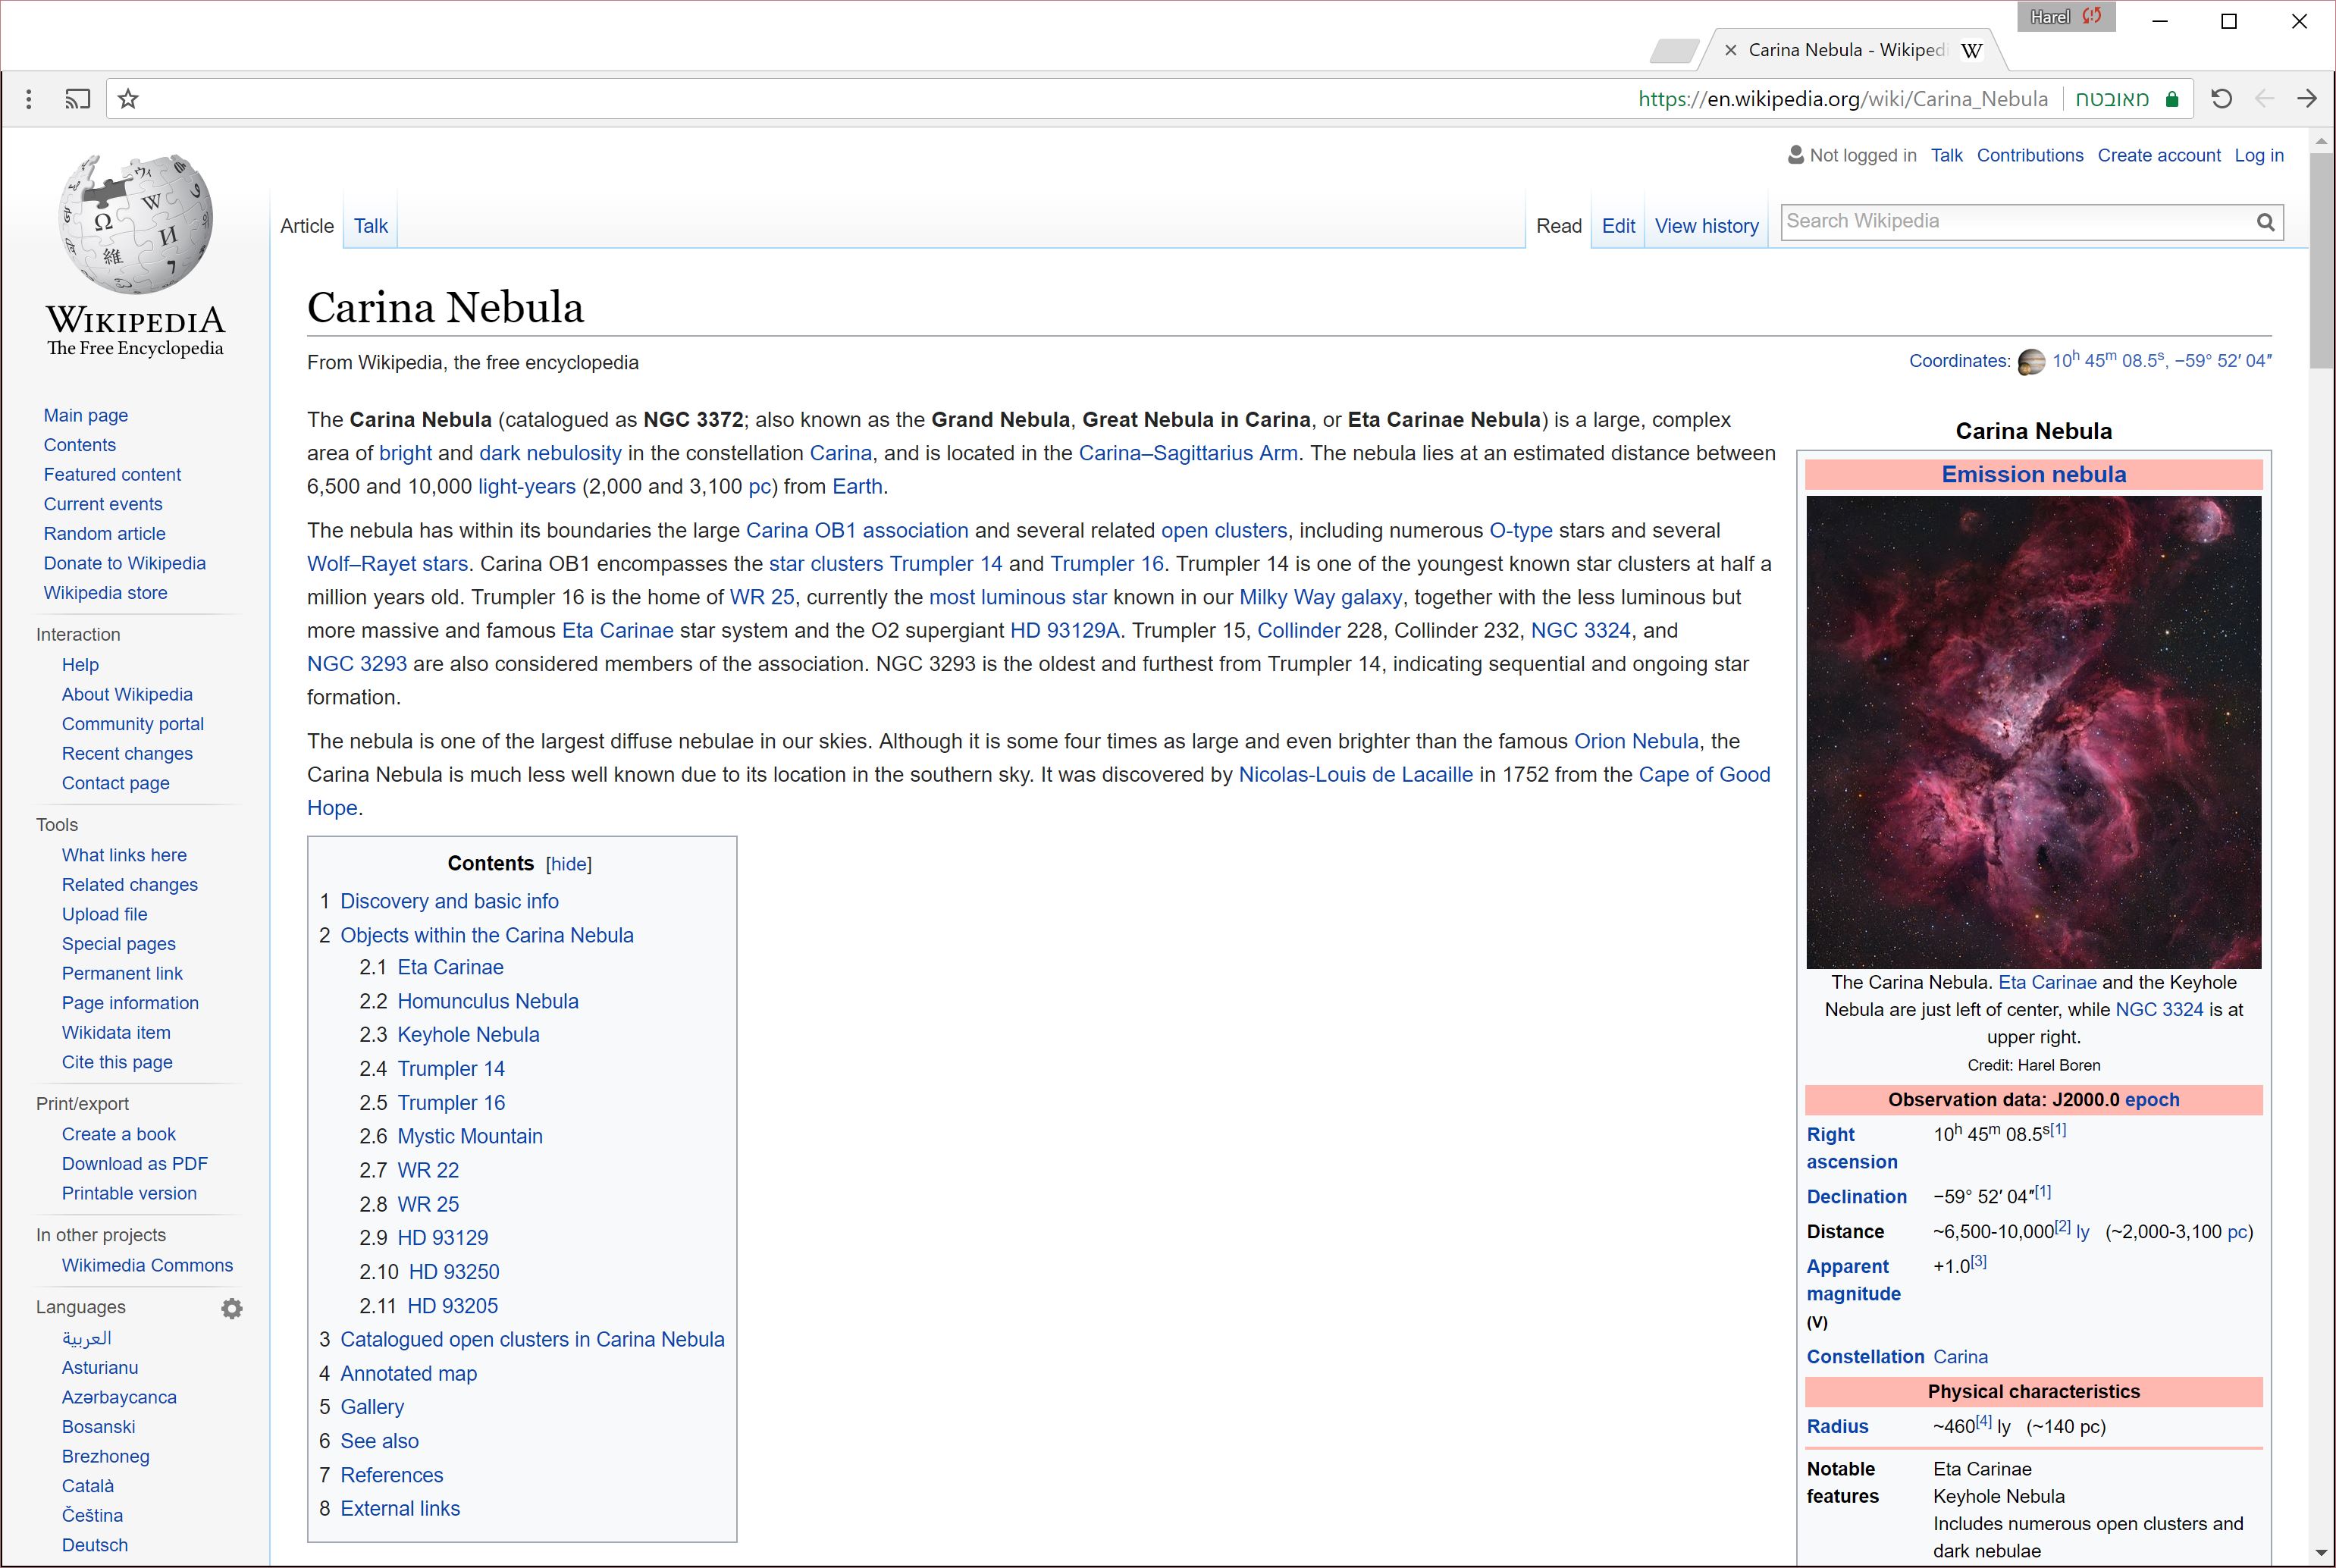 The Carina Nebula - Wikipedia